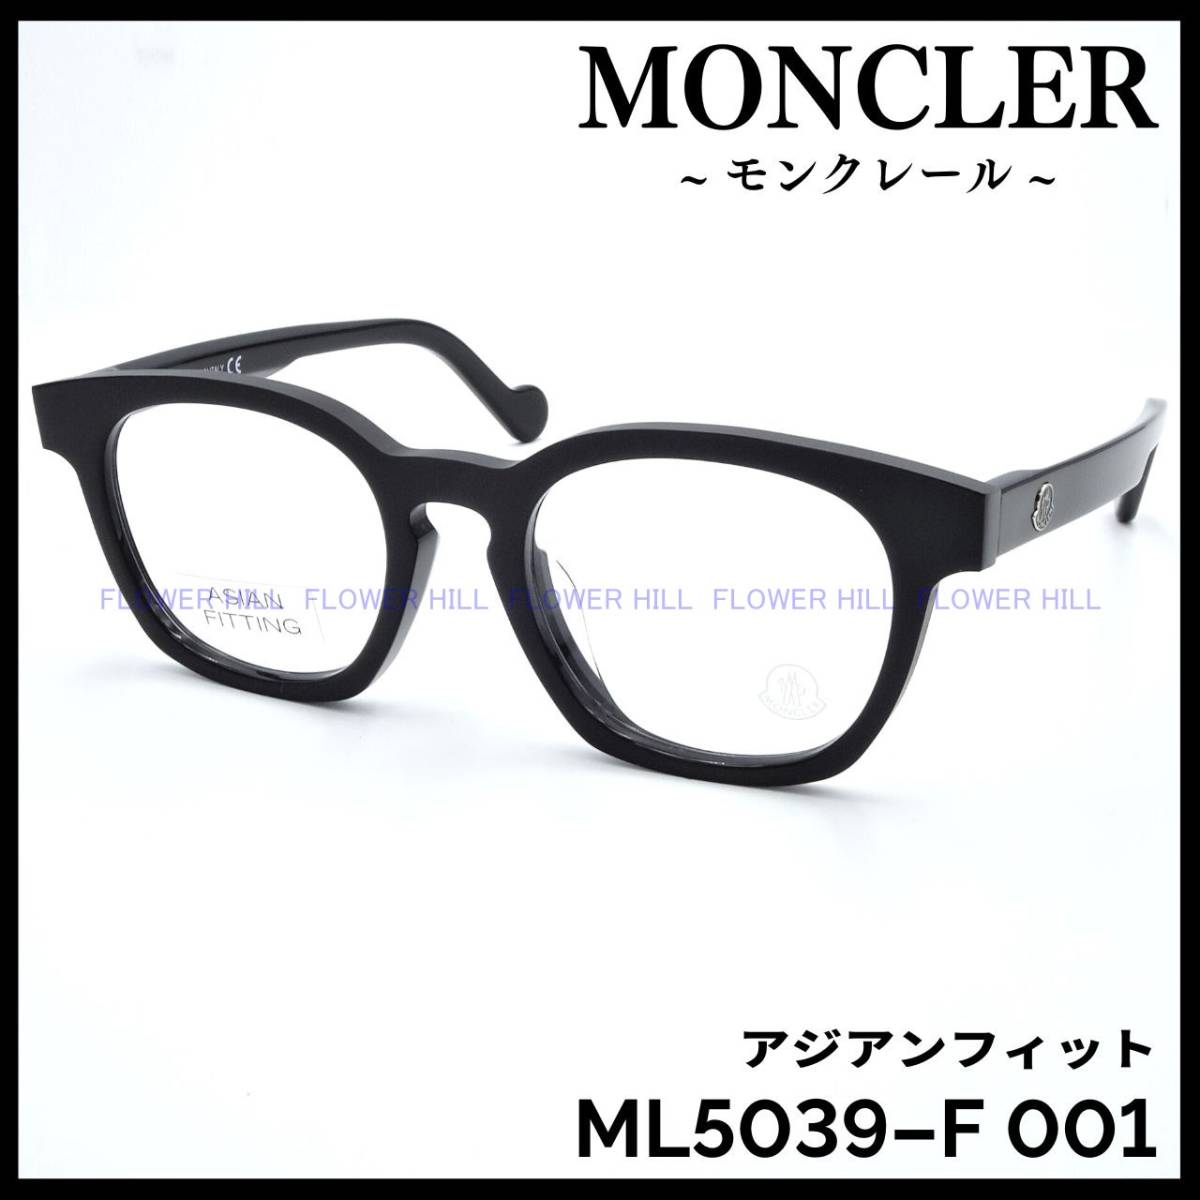 モンクレール MONCLER メガネ フレーム ML5039-F 001 アジアンフィット